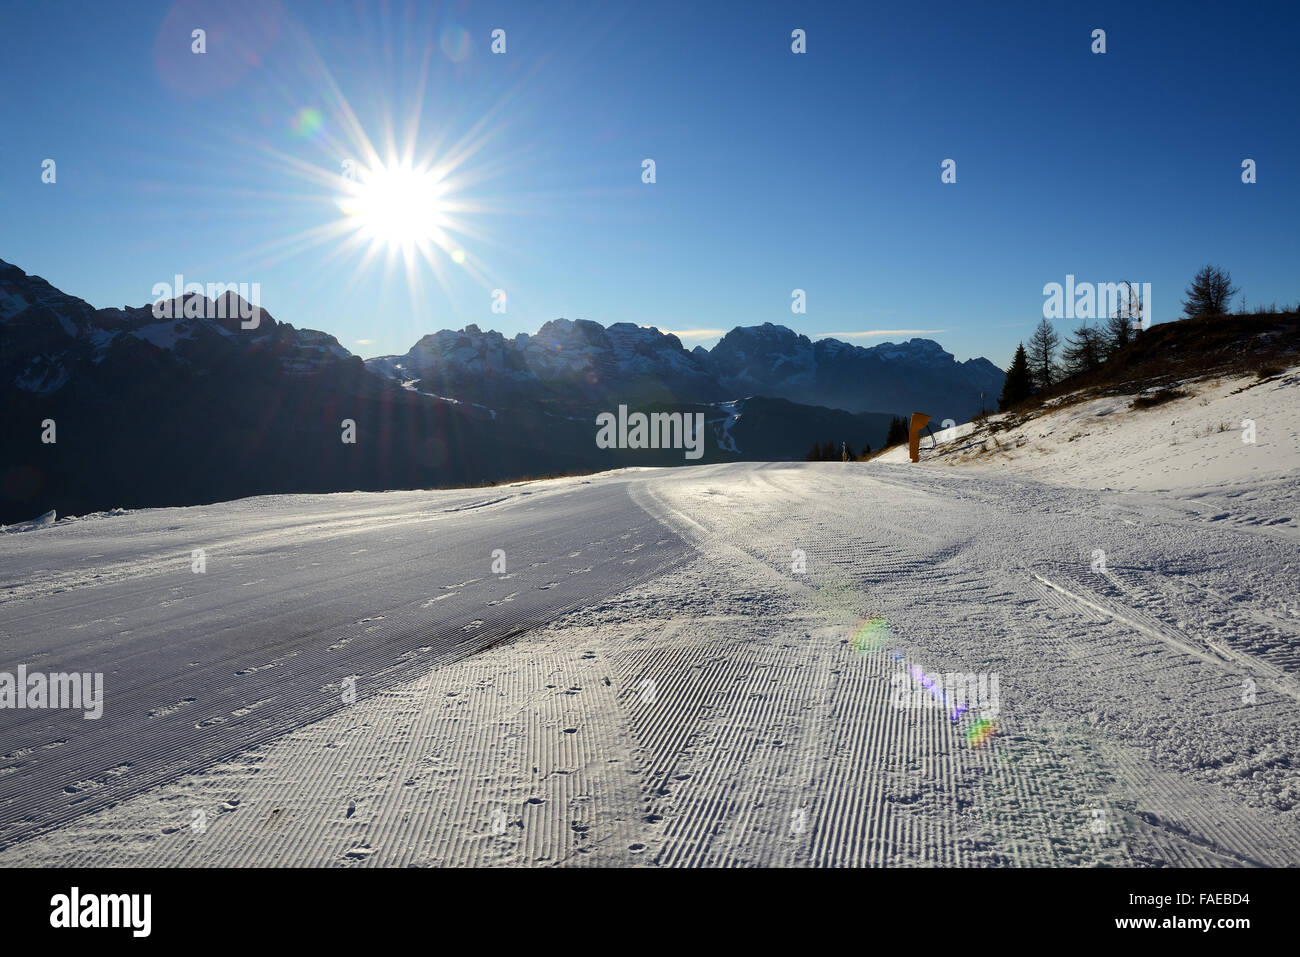 La pente de ski avec une vue sur les montagnes des Dolomites et sun, Madonna di Campiglio, Italie Banque D'Images